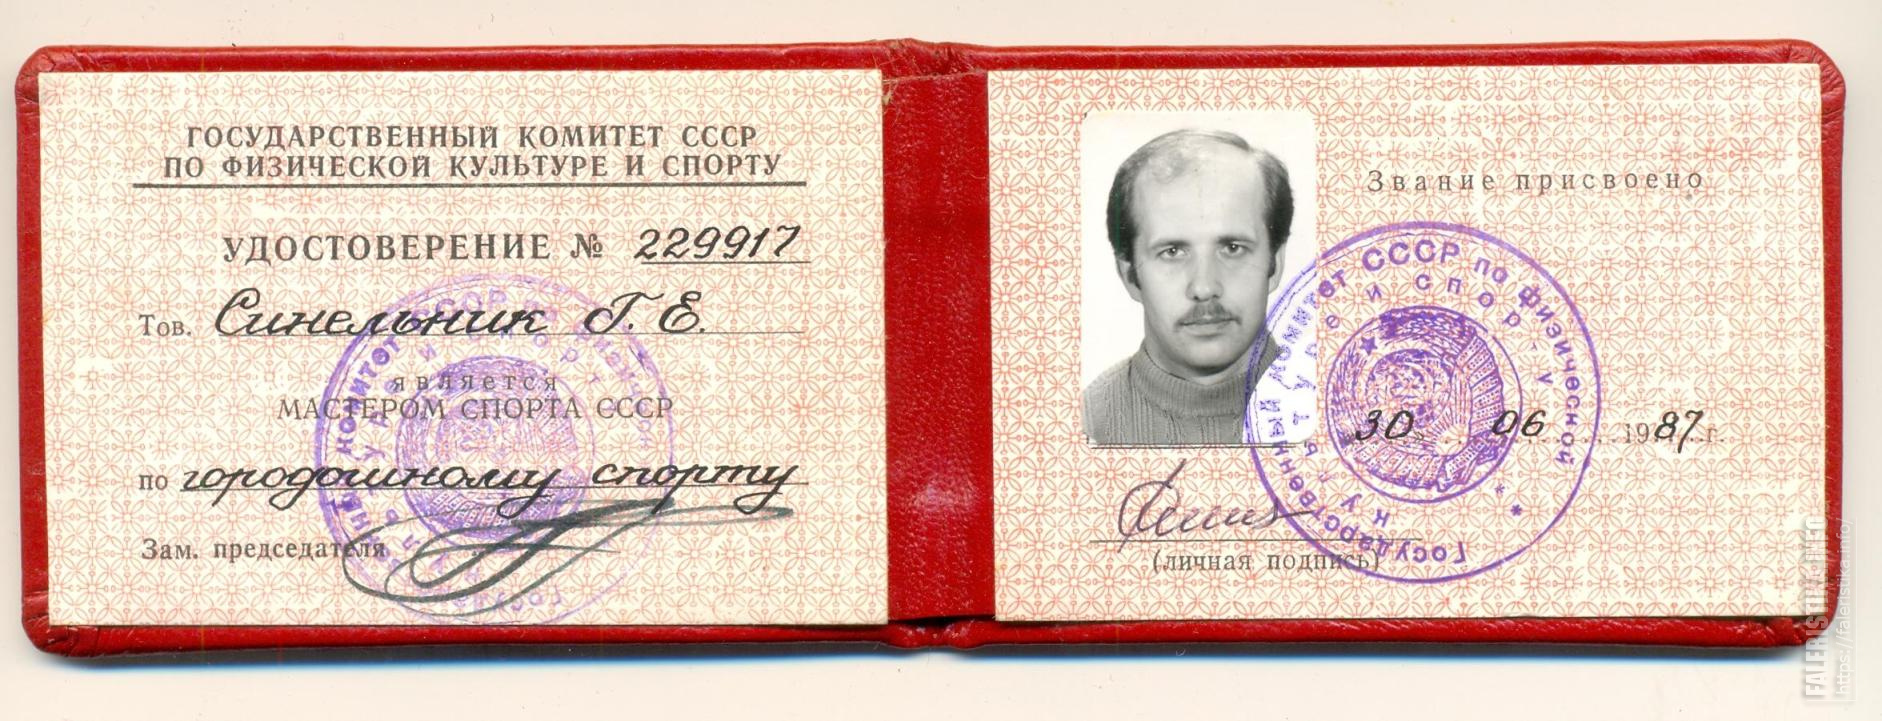 Удостоверение мастера спорта СССР